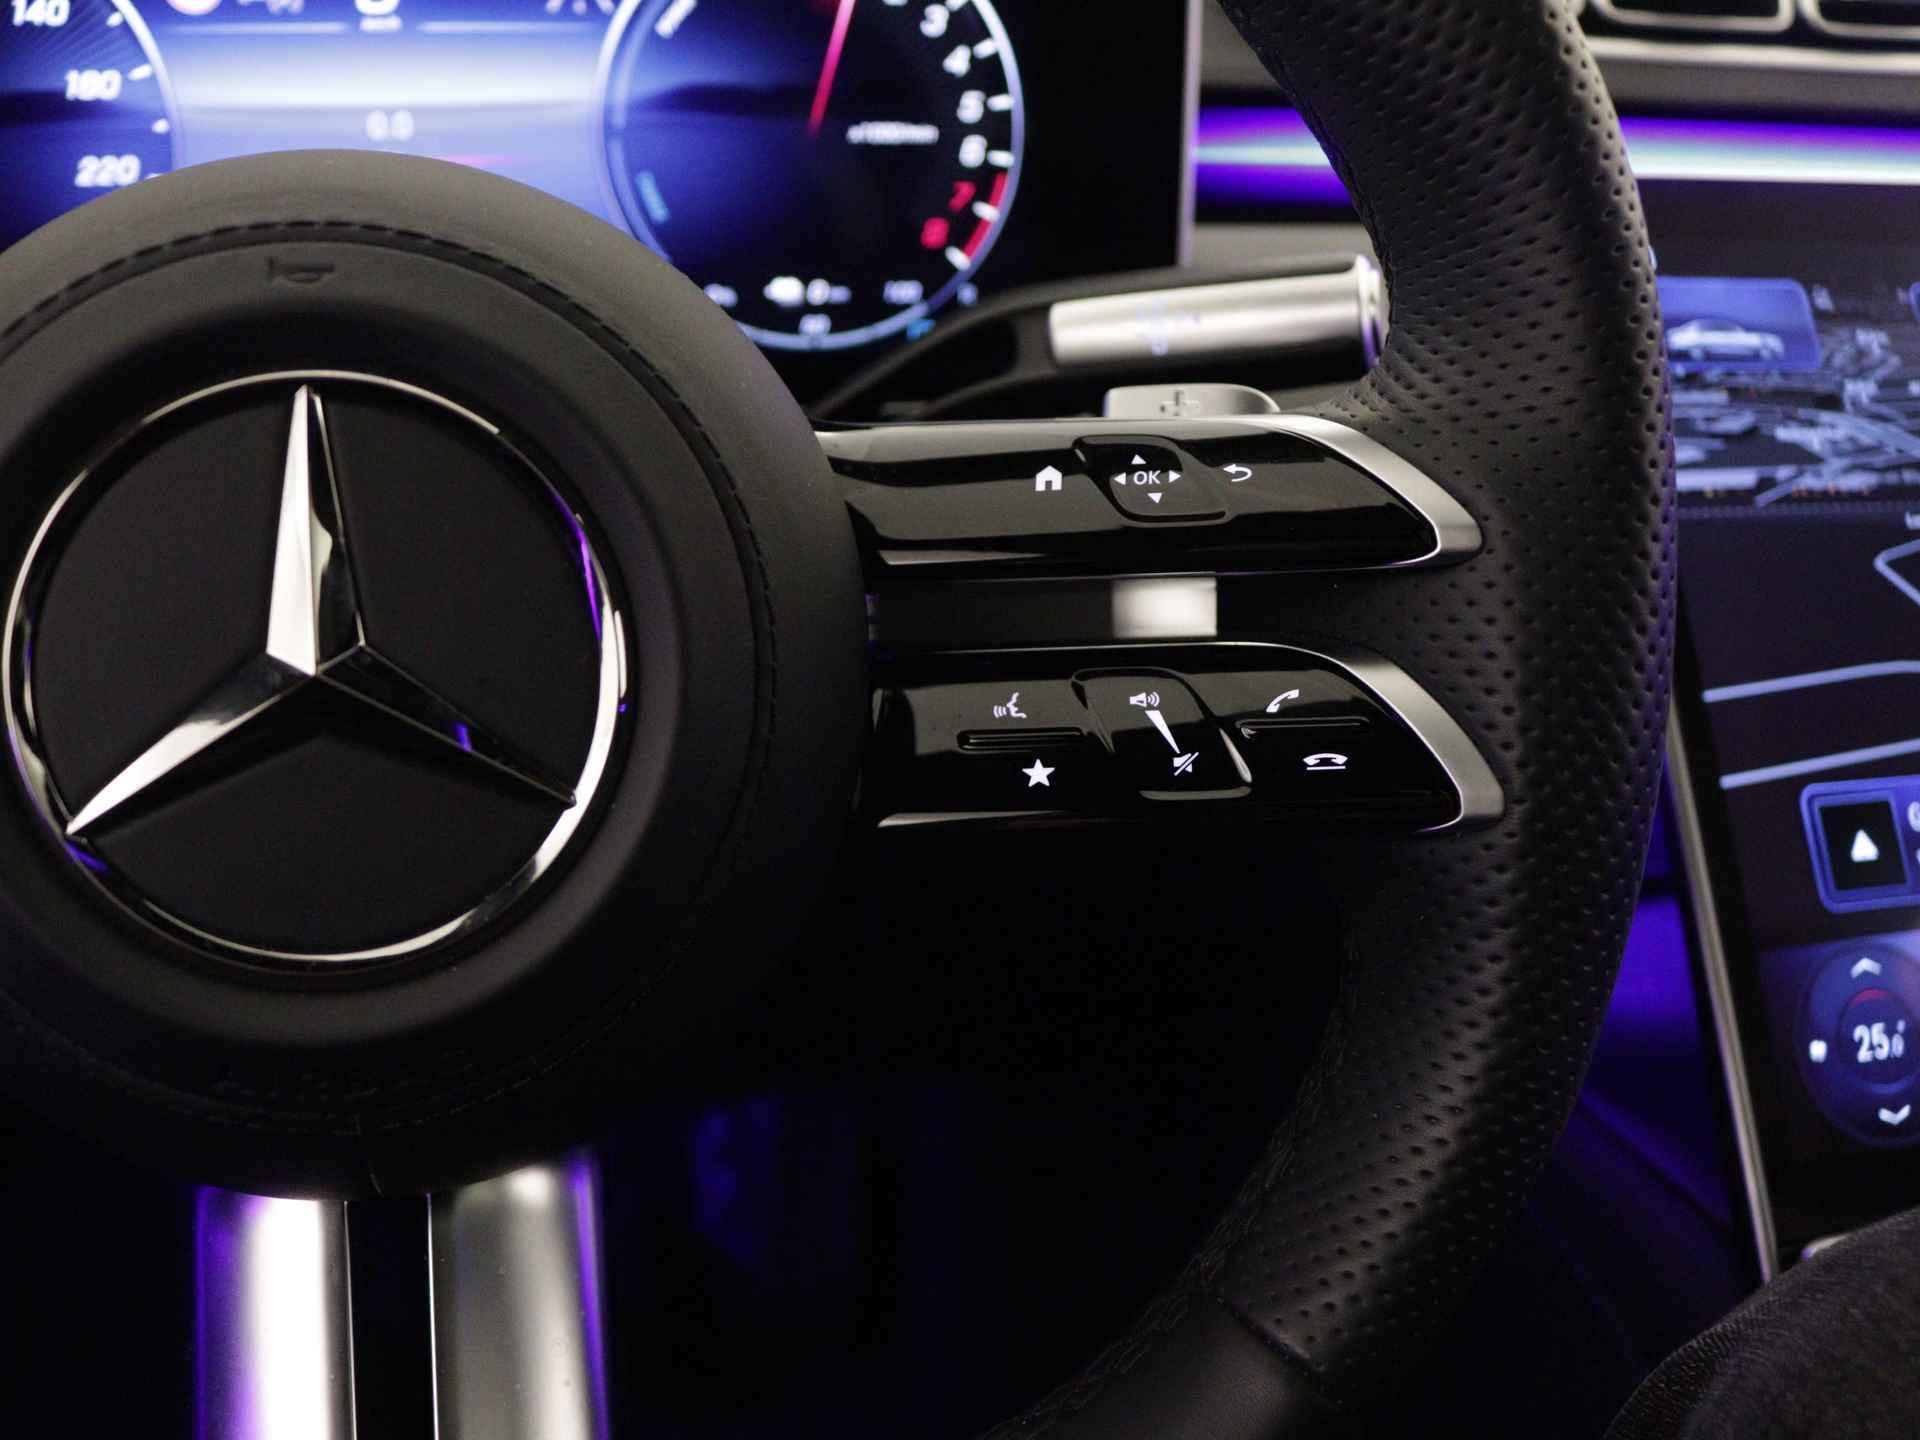 Mercedes-Benz S-Klasse 450 e Lang AMG Line Multi spaaks lichtmetalen velgen| Premium plus pakket | Night Pakket | Achteras meesturend 4,5 graad | Alarm klasse 5 | inclusief 24 maanden MB Certified garantie voor europa - 20/37